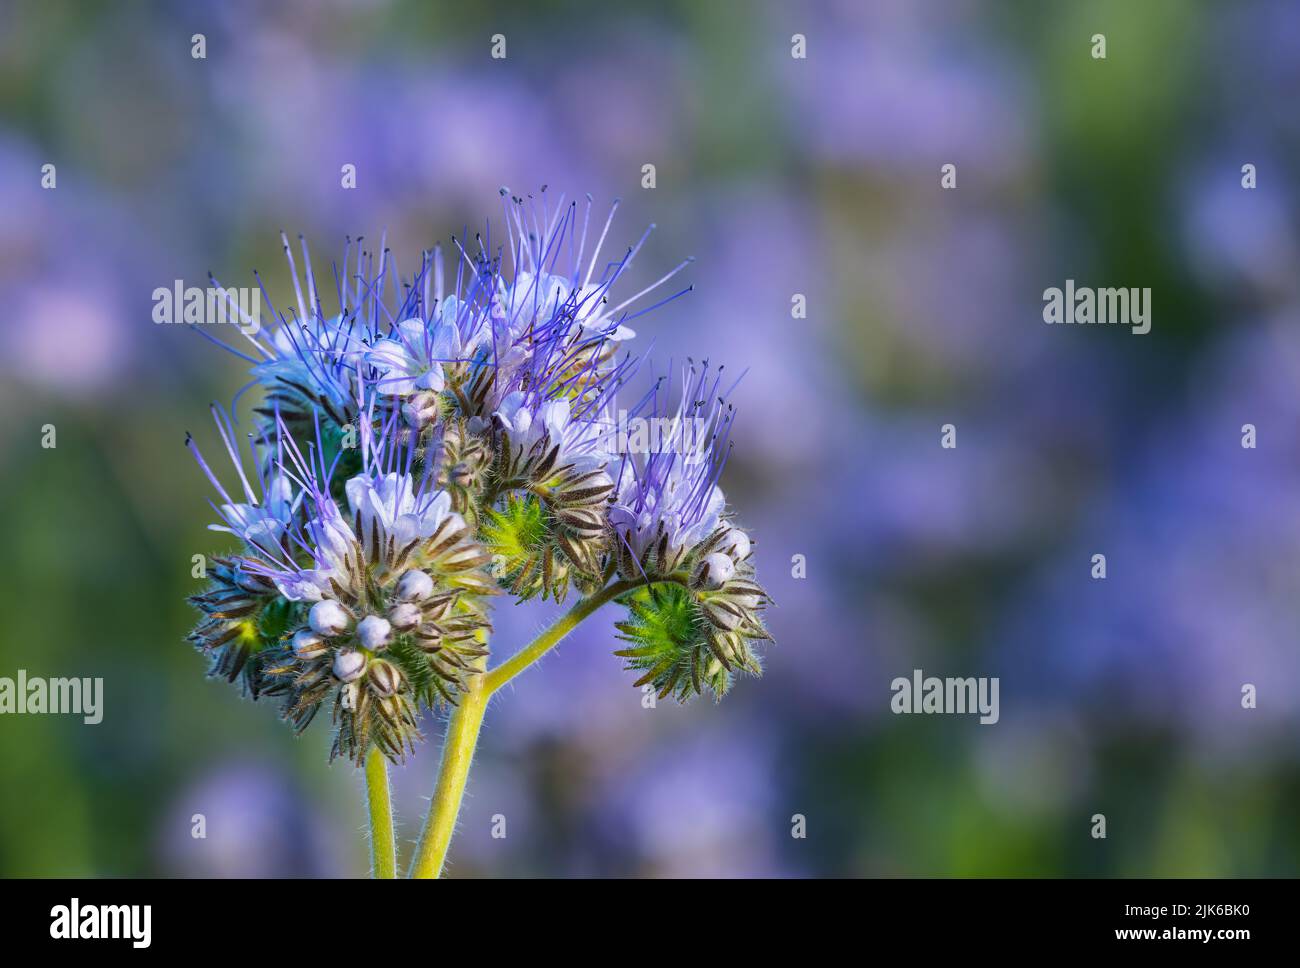 Blaue Tansy-Blüten und Knospen auf violett-grünem Naturhintergrund. Phacelia tanacetifolia. Nahaufnahme von zerbrechlichen, sich winkenden glockenförmigen Blüten auf verschwommenem Feld. Stockfoto